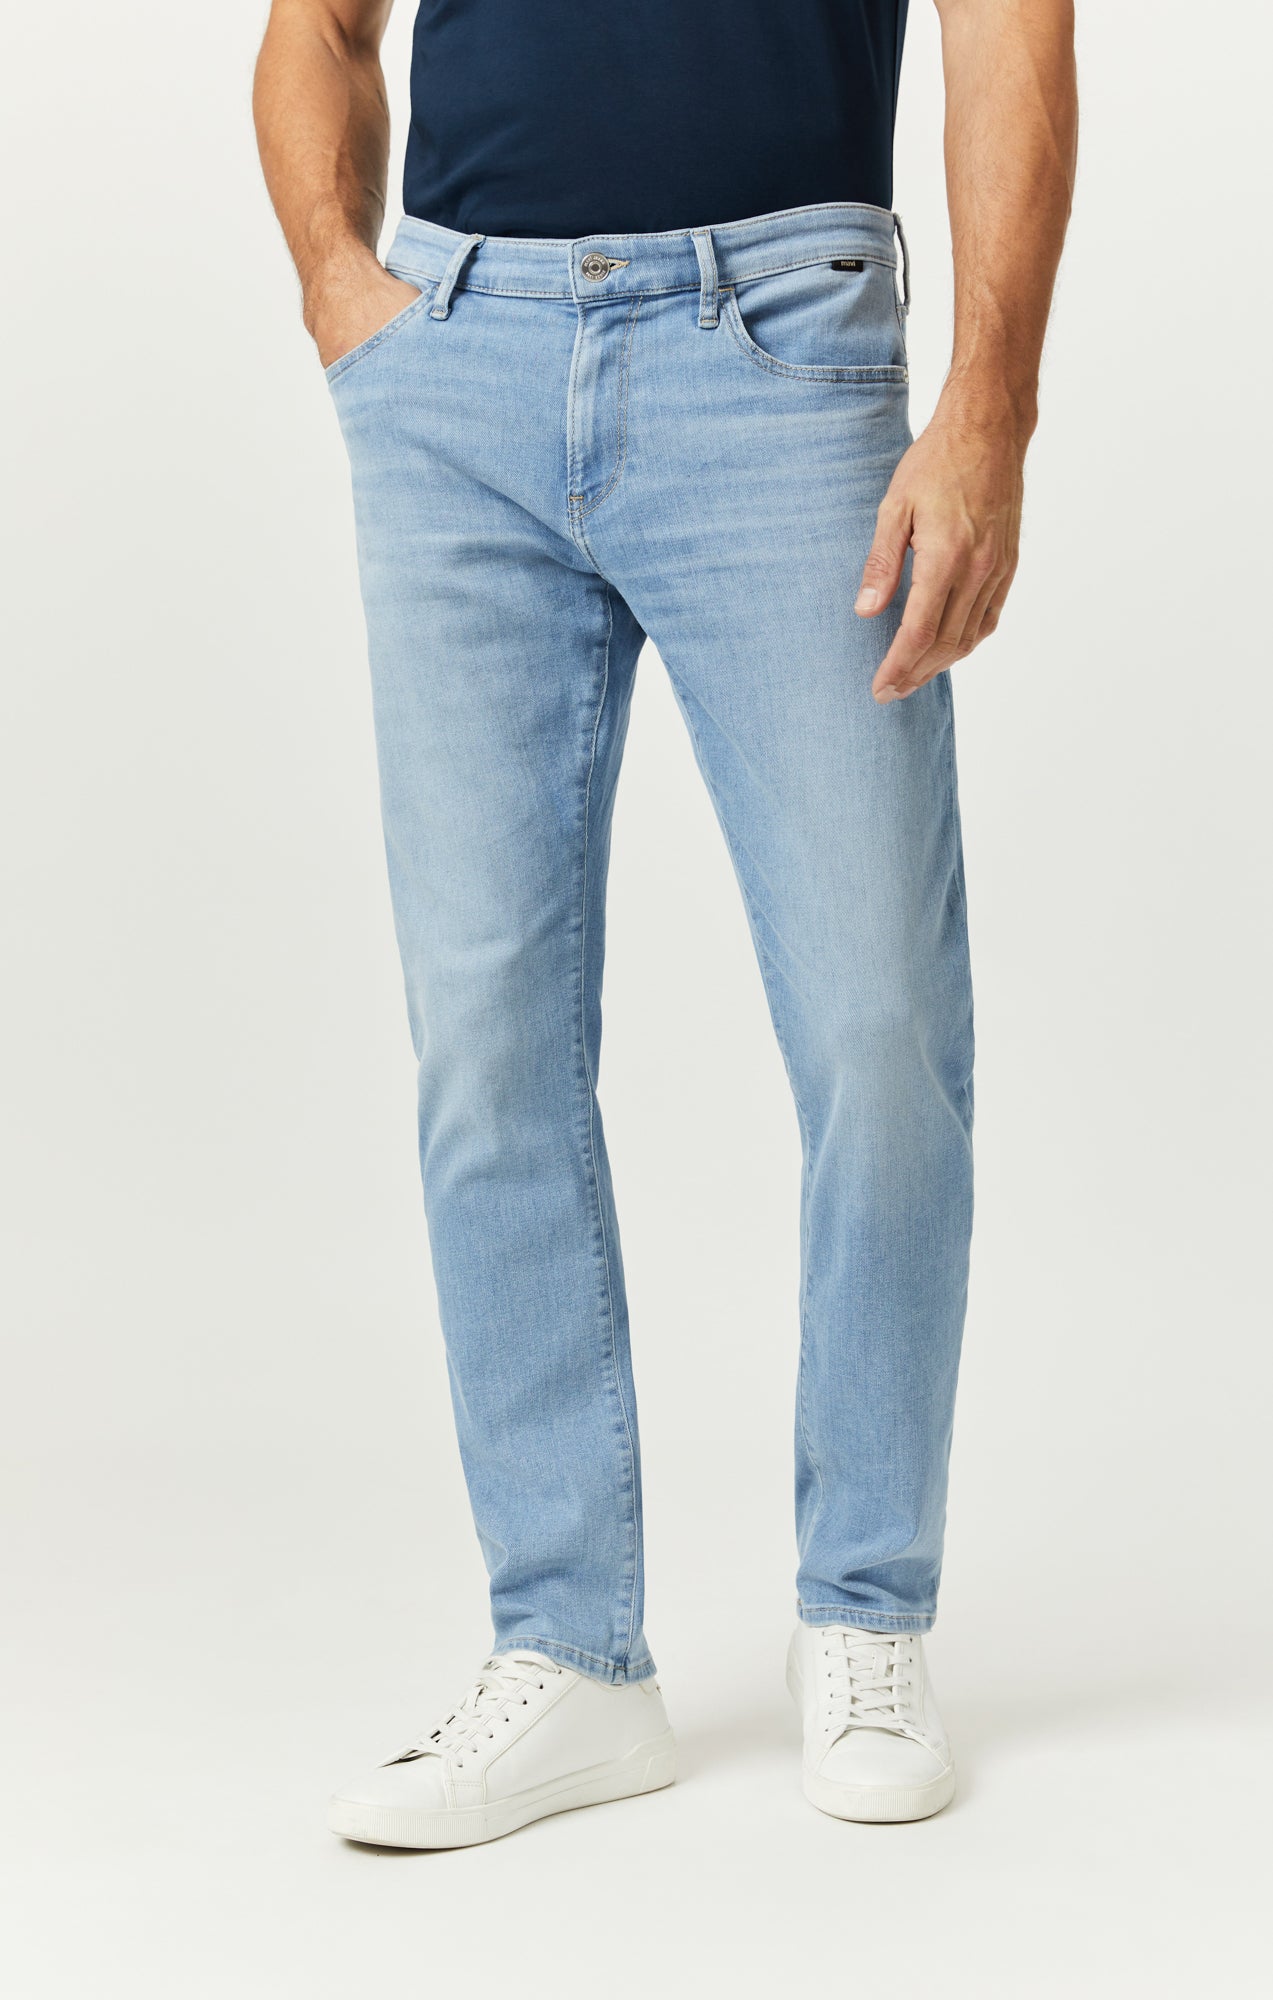 Men's Light Wash Slim Straight Jeans, Men's Bottoms